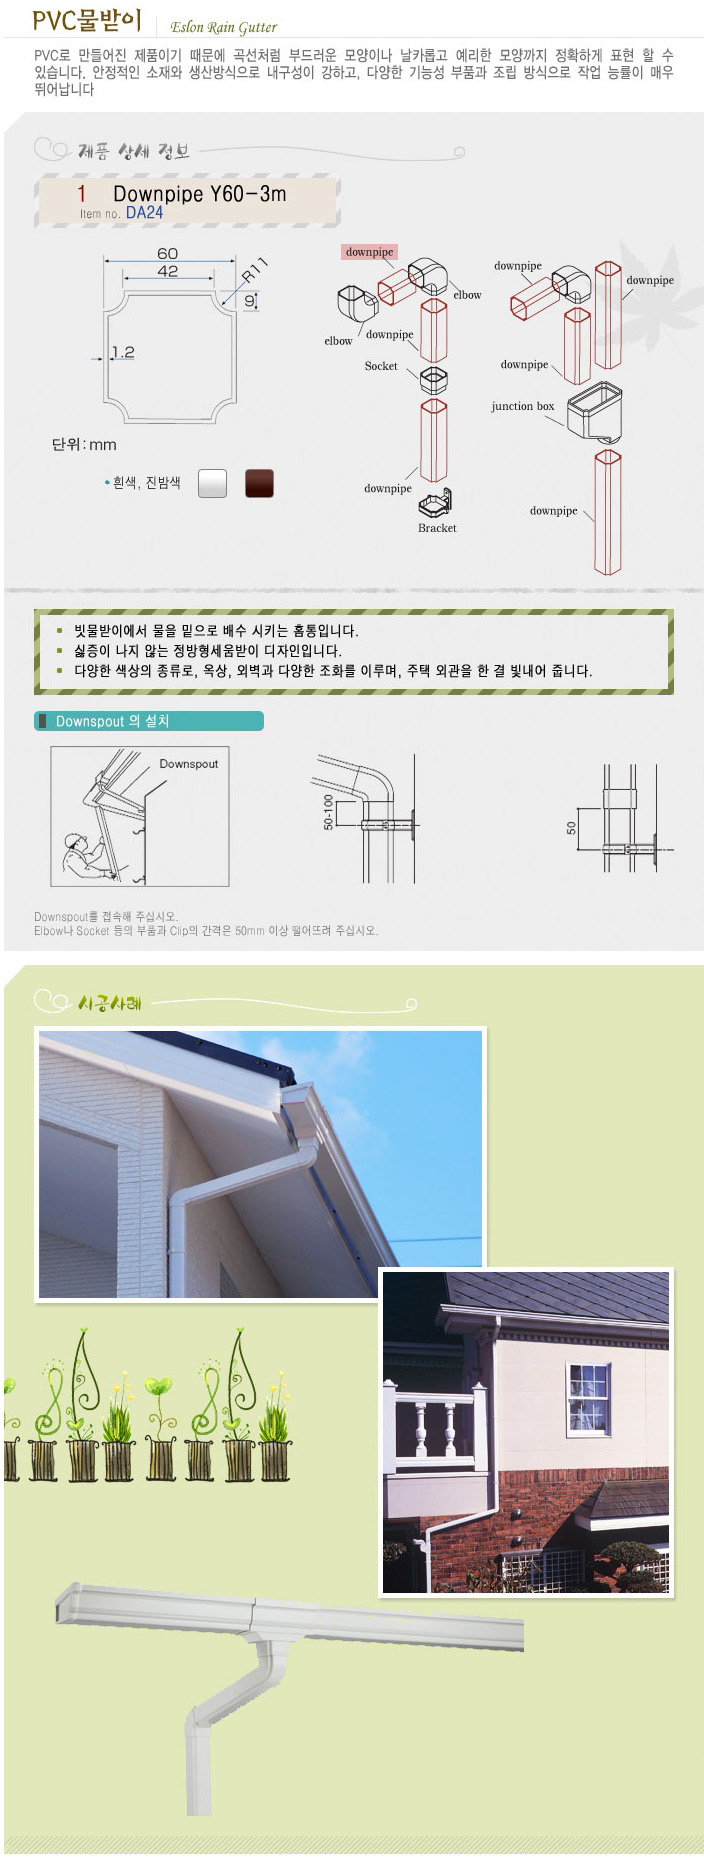 [빗물받이]에스론90 - PVC일본 Downpipe 물홈통 3m